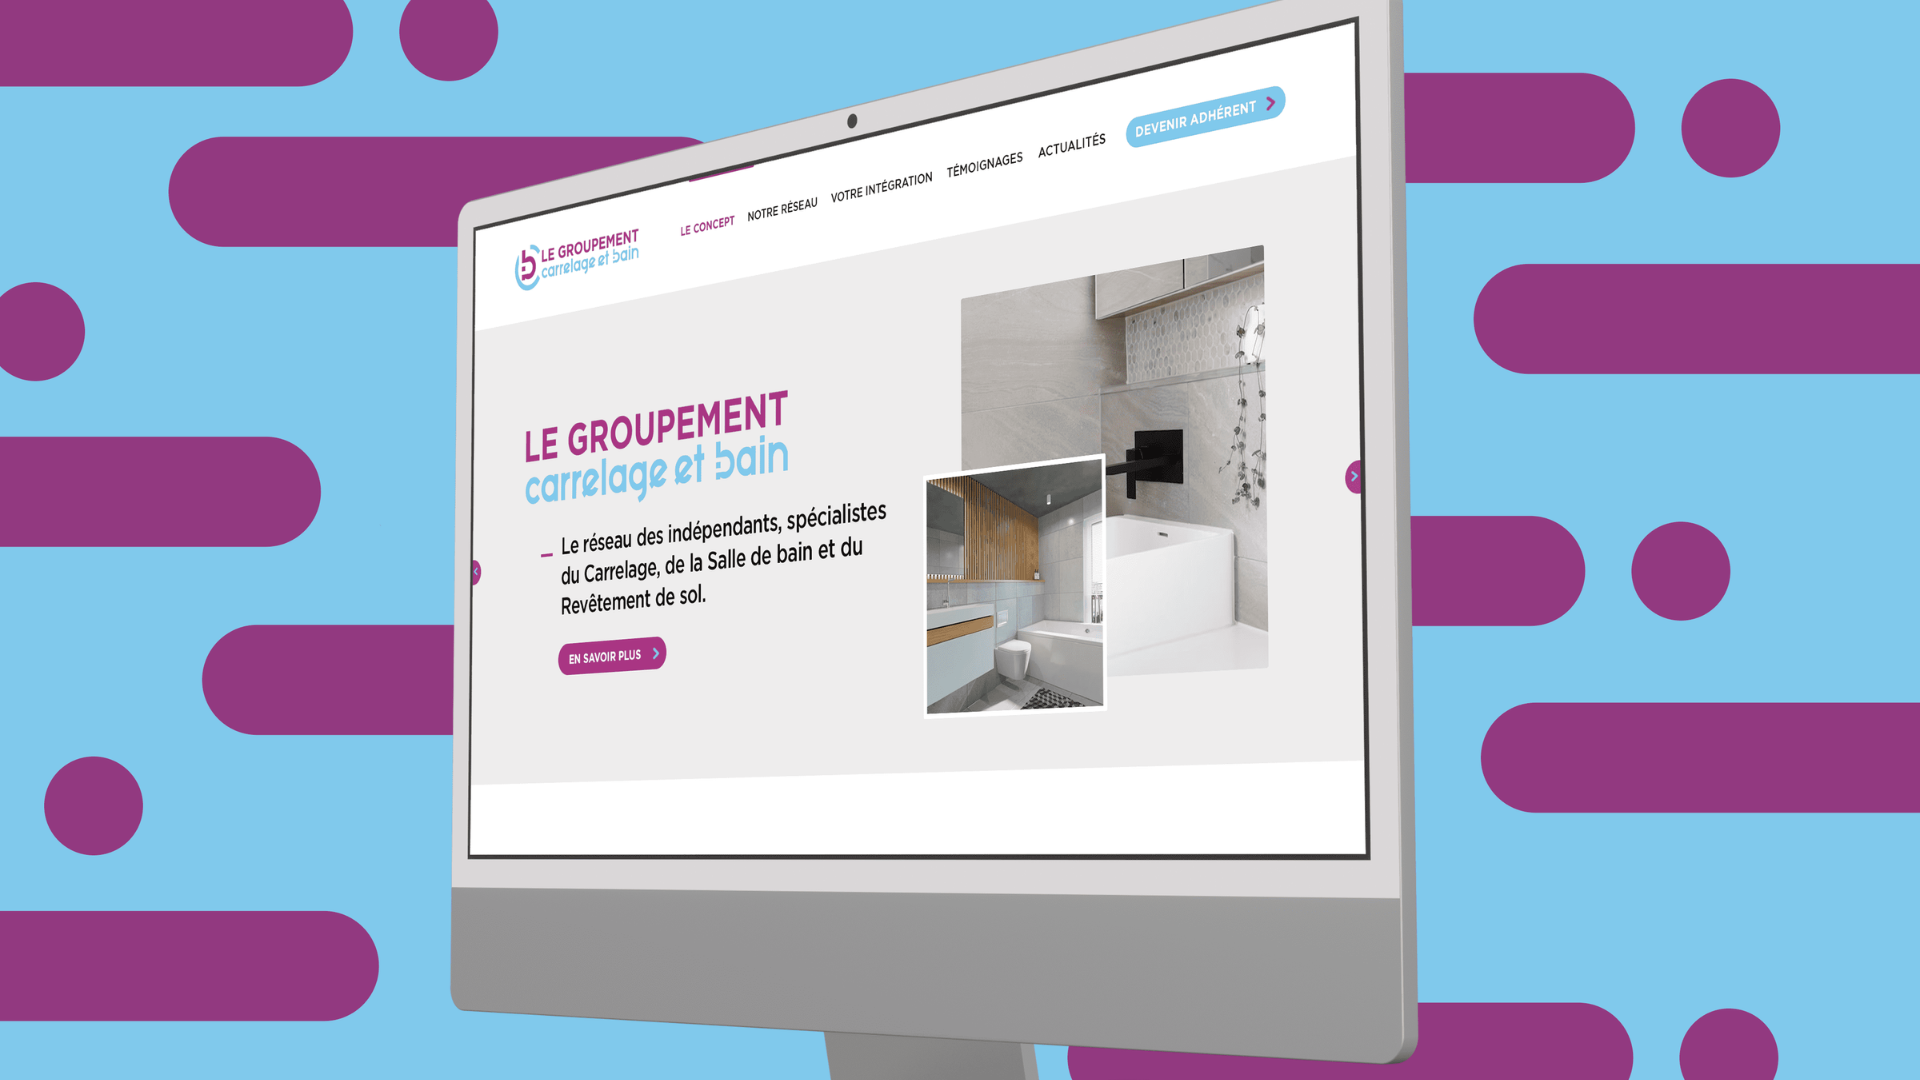 Carrelage et Bain - Développement Web Création Site Internet | Bonne Nouvelle, Agence Communication Digitale, Valence (Drôme)